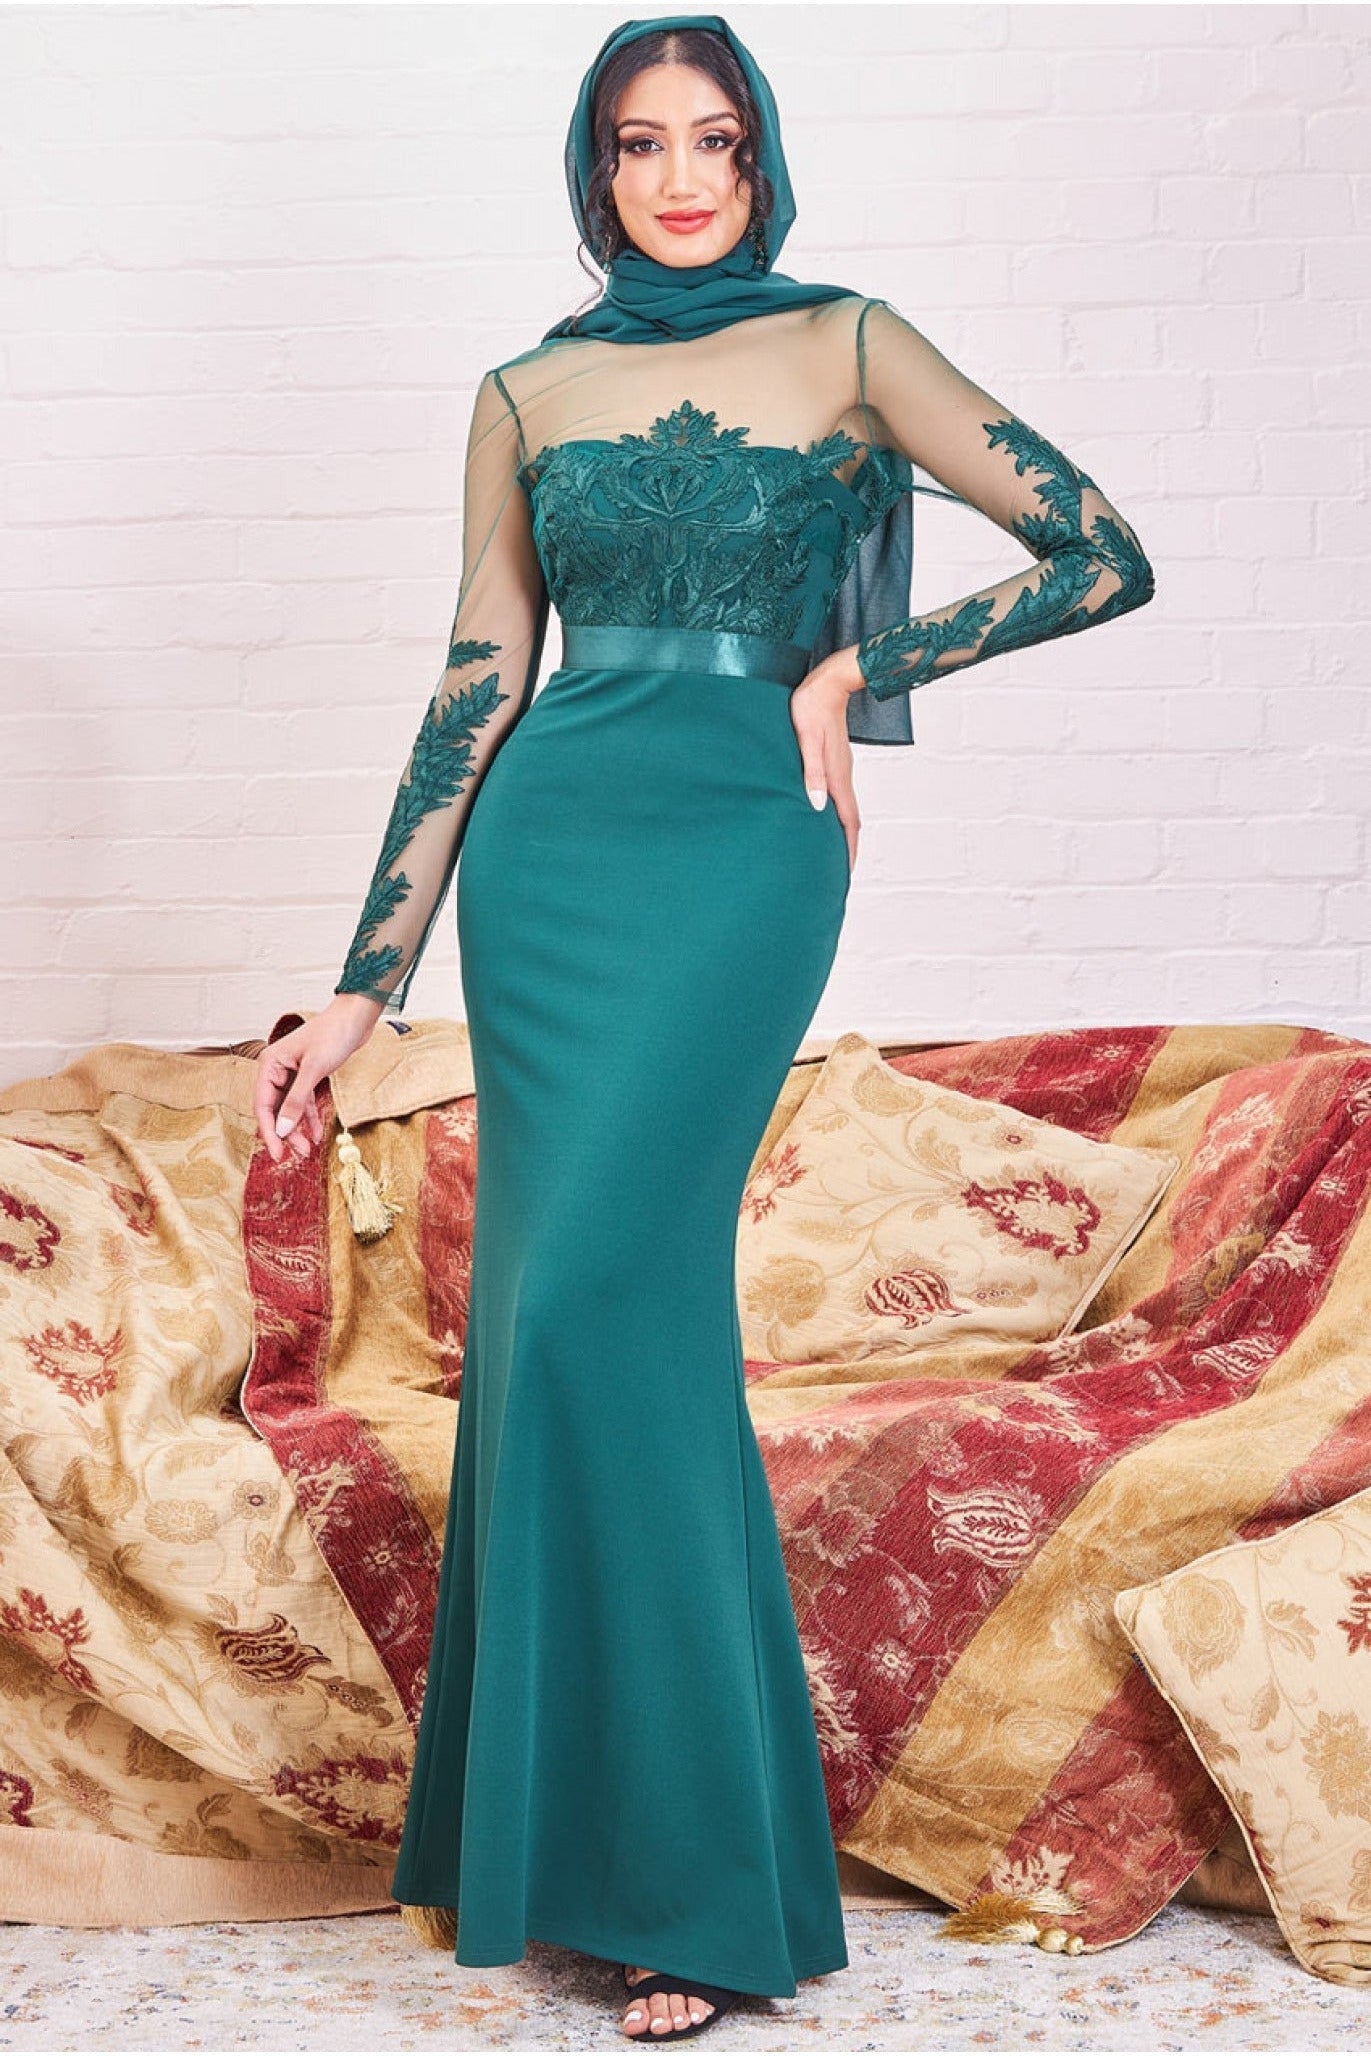 Modesty Mesh & Scuba Maxi Dress - Emerald Green DR3291MOD